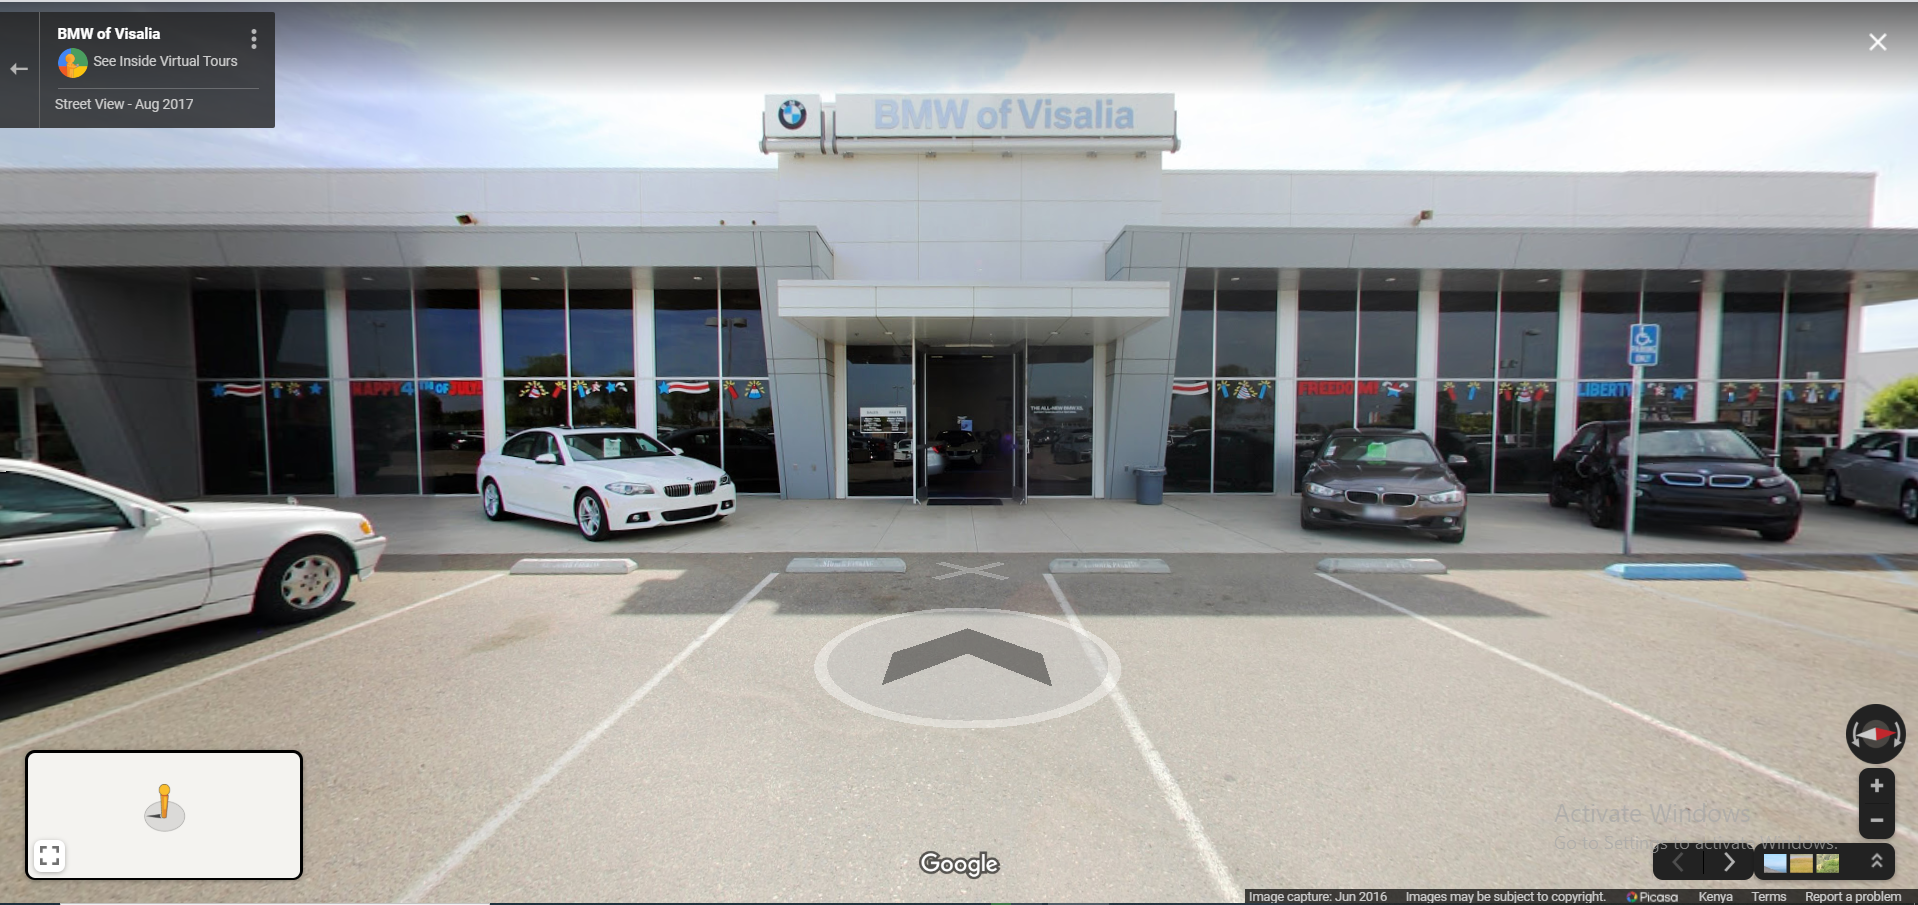 BMW Dealerships